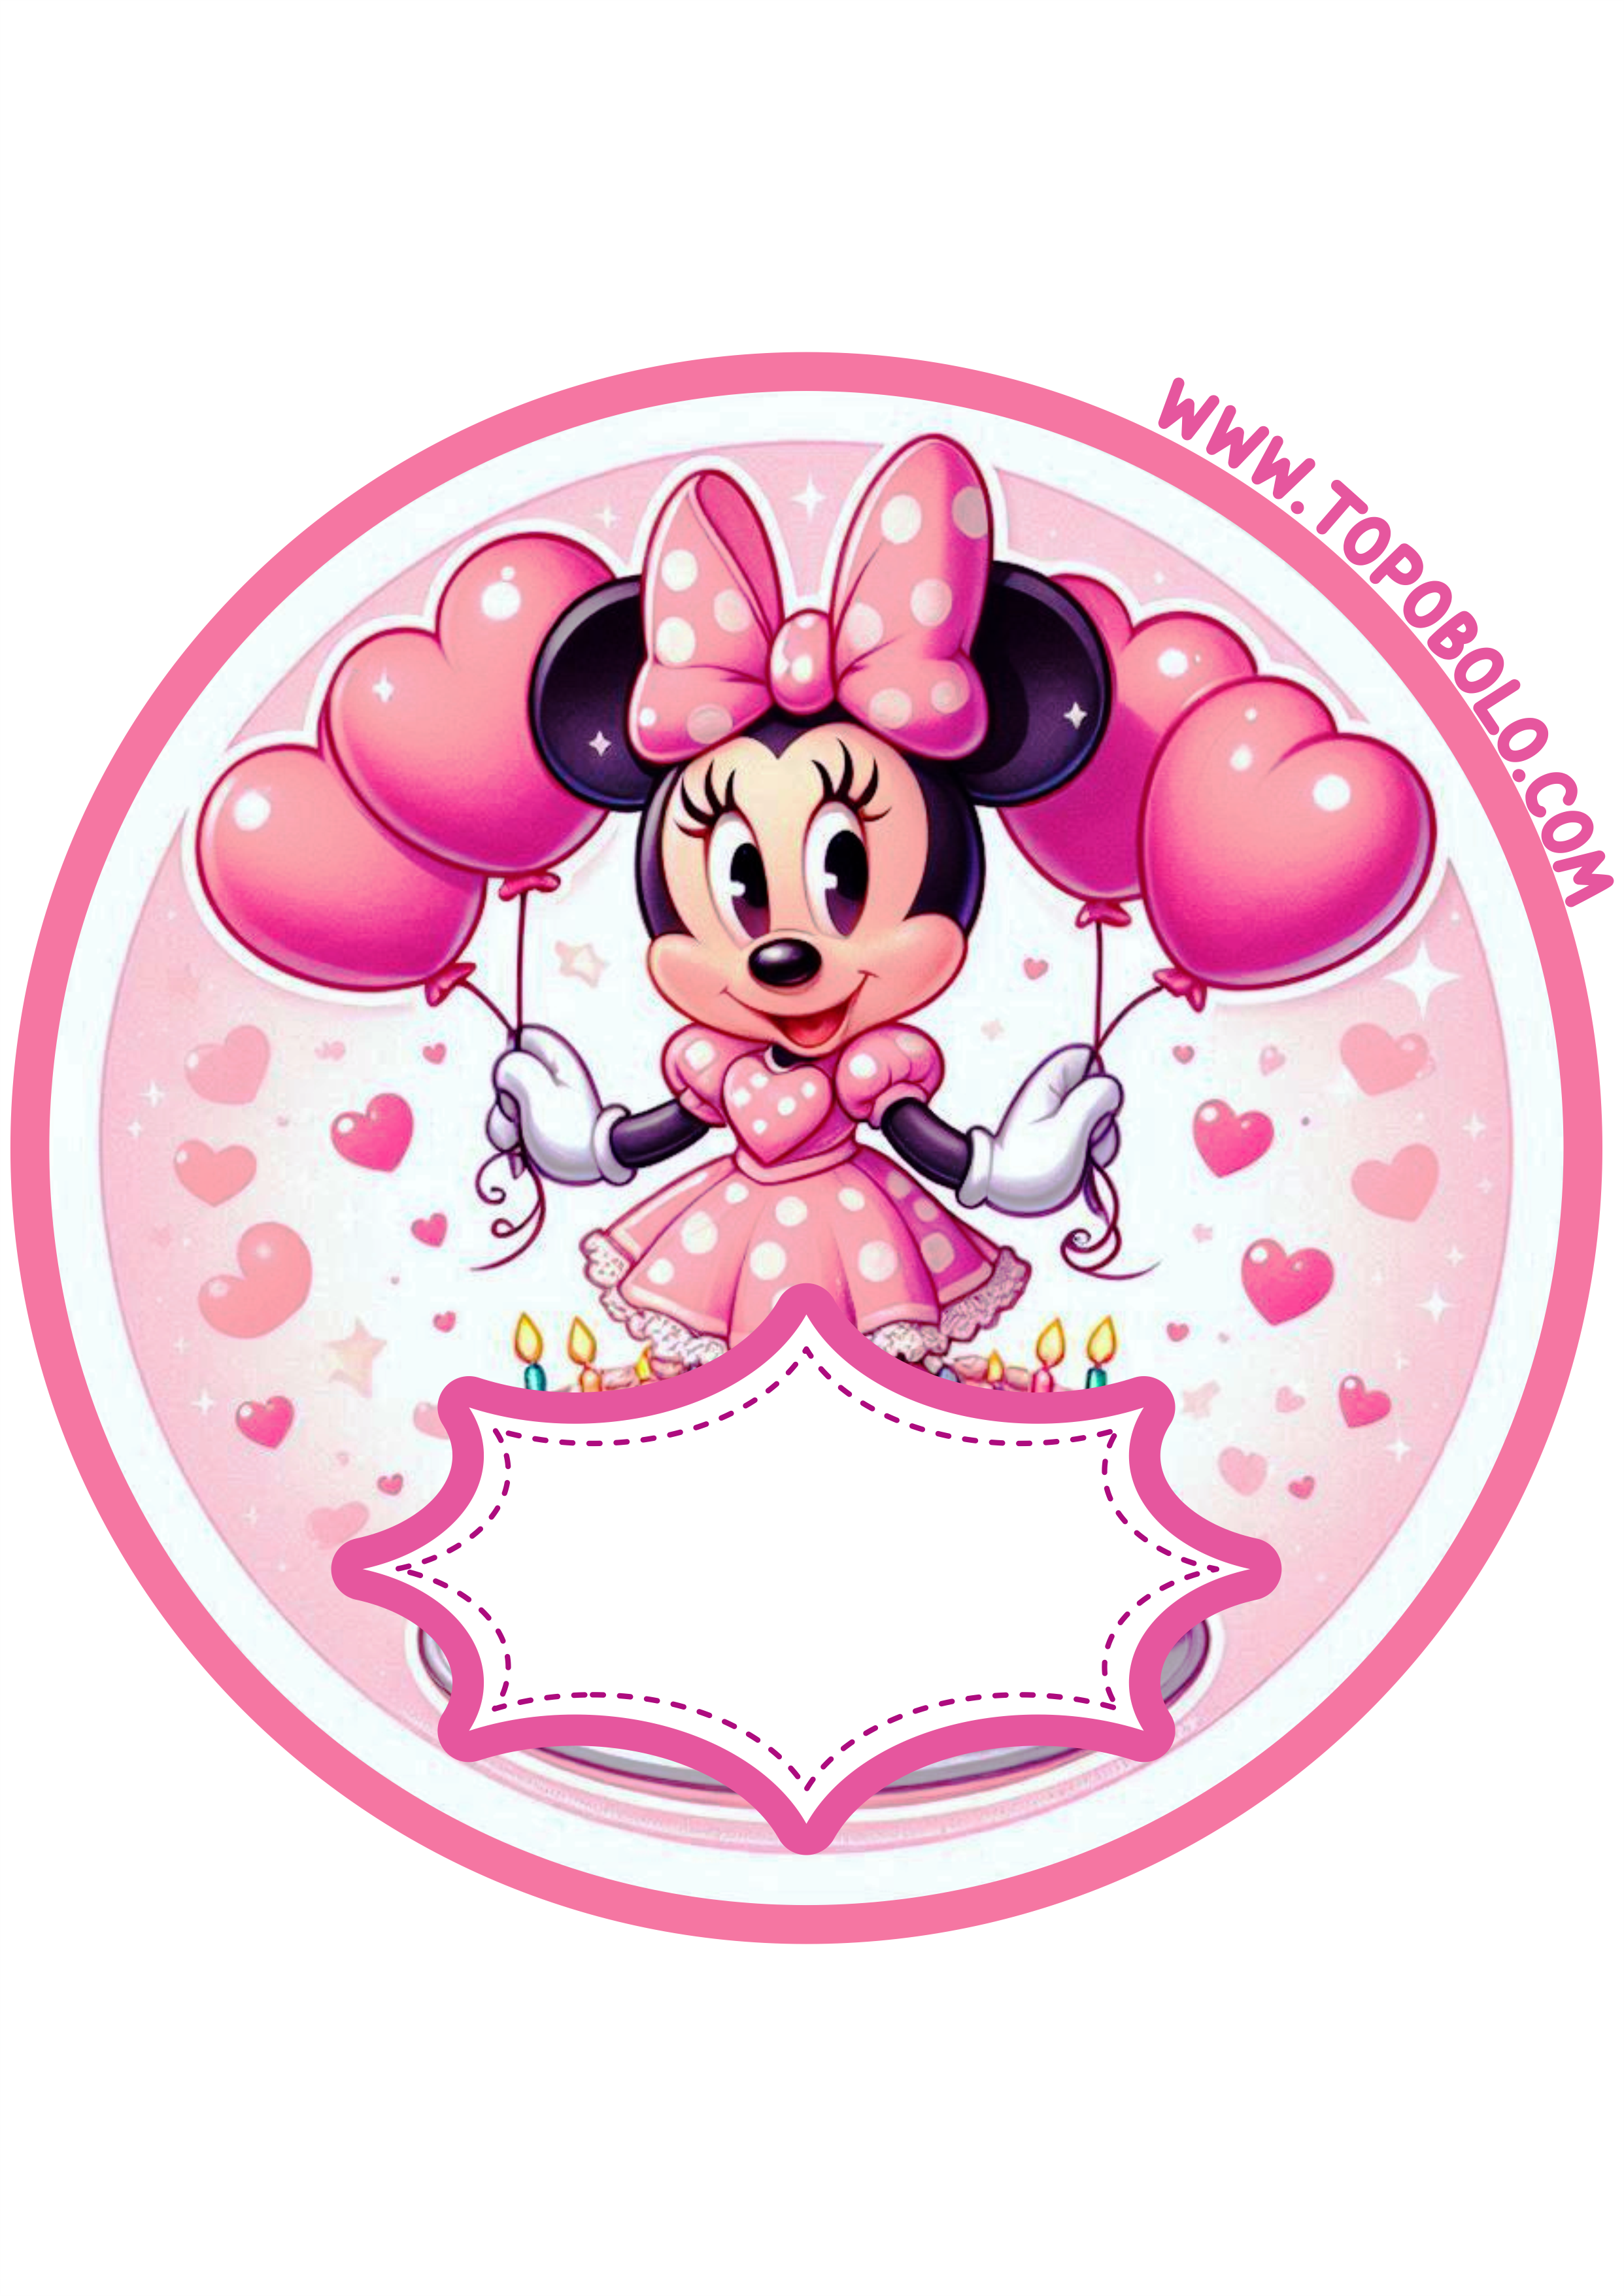 Minnie rosa decoração de aniversário adesivo redondo para imprimir festa infantil papelaria criativa png